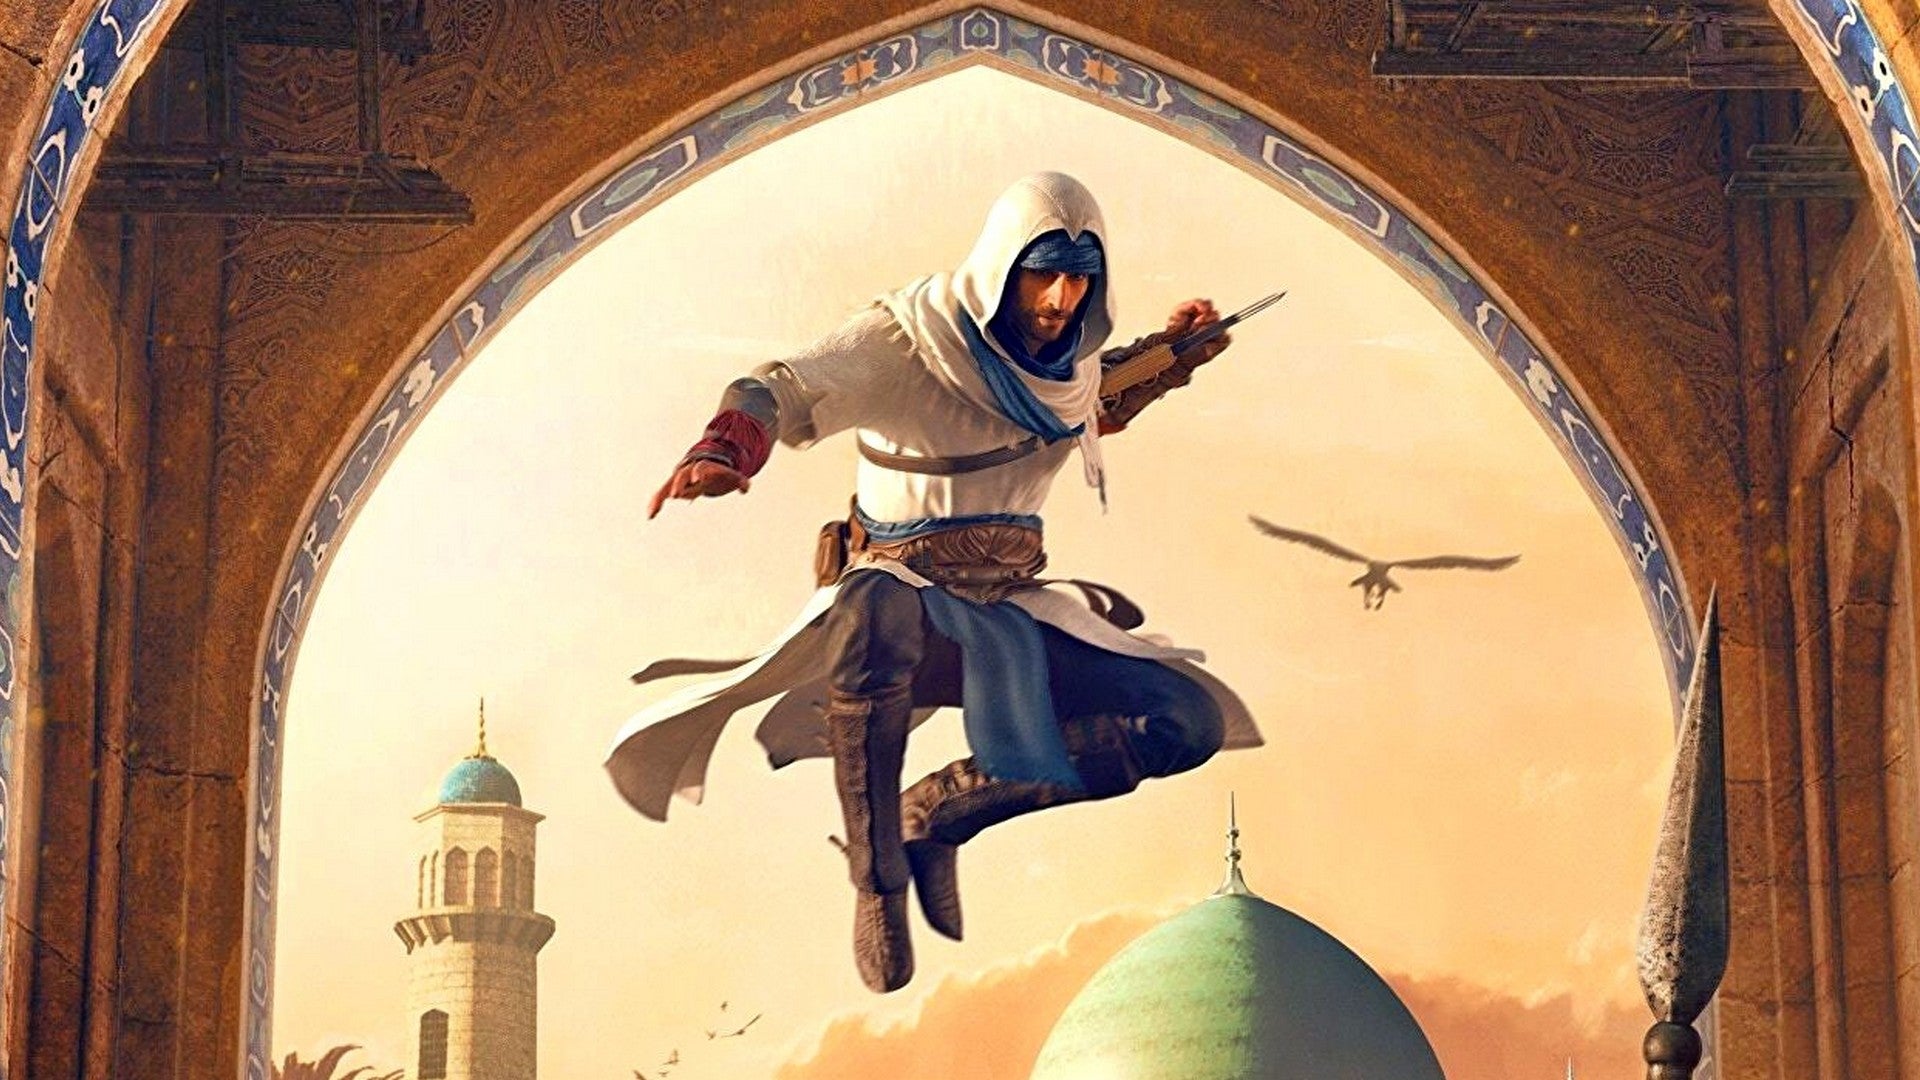 Bilder zu Assassin's Creed Mirage erscheint 2023 und ihr sollt mit Basim mehr schleichen als sonst